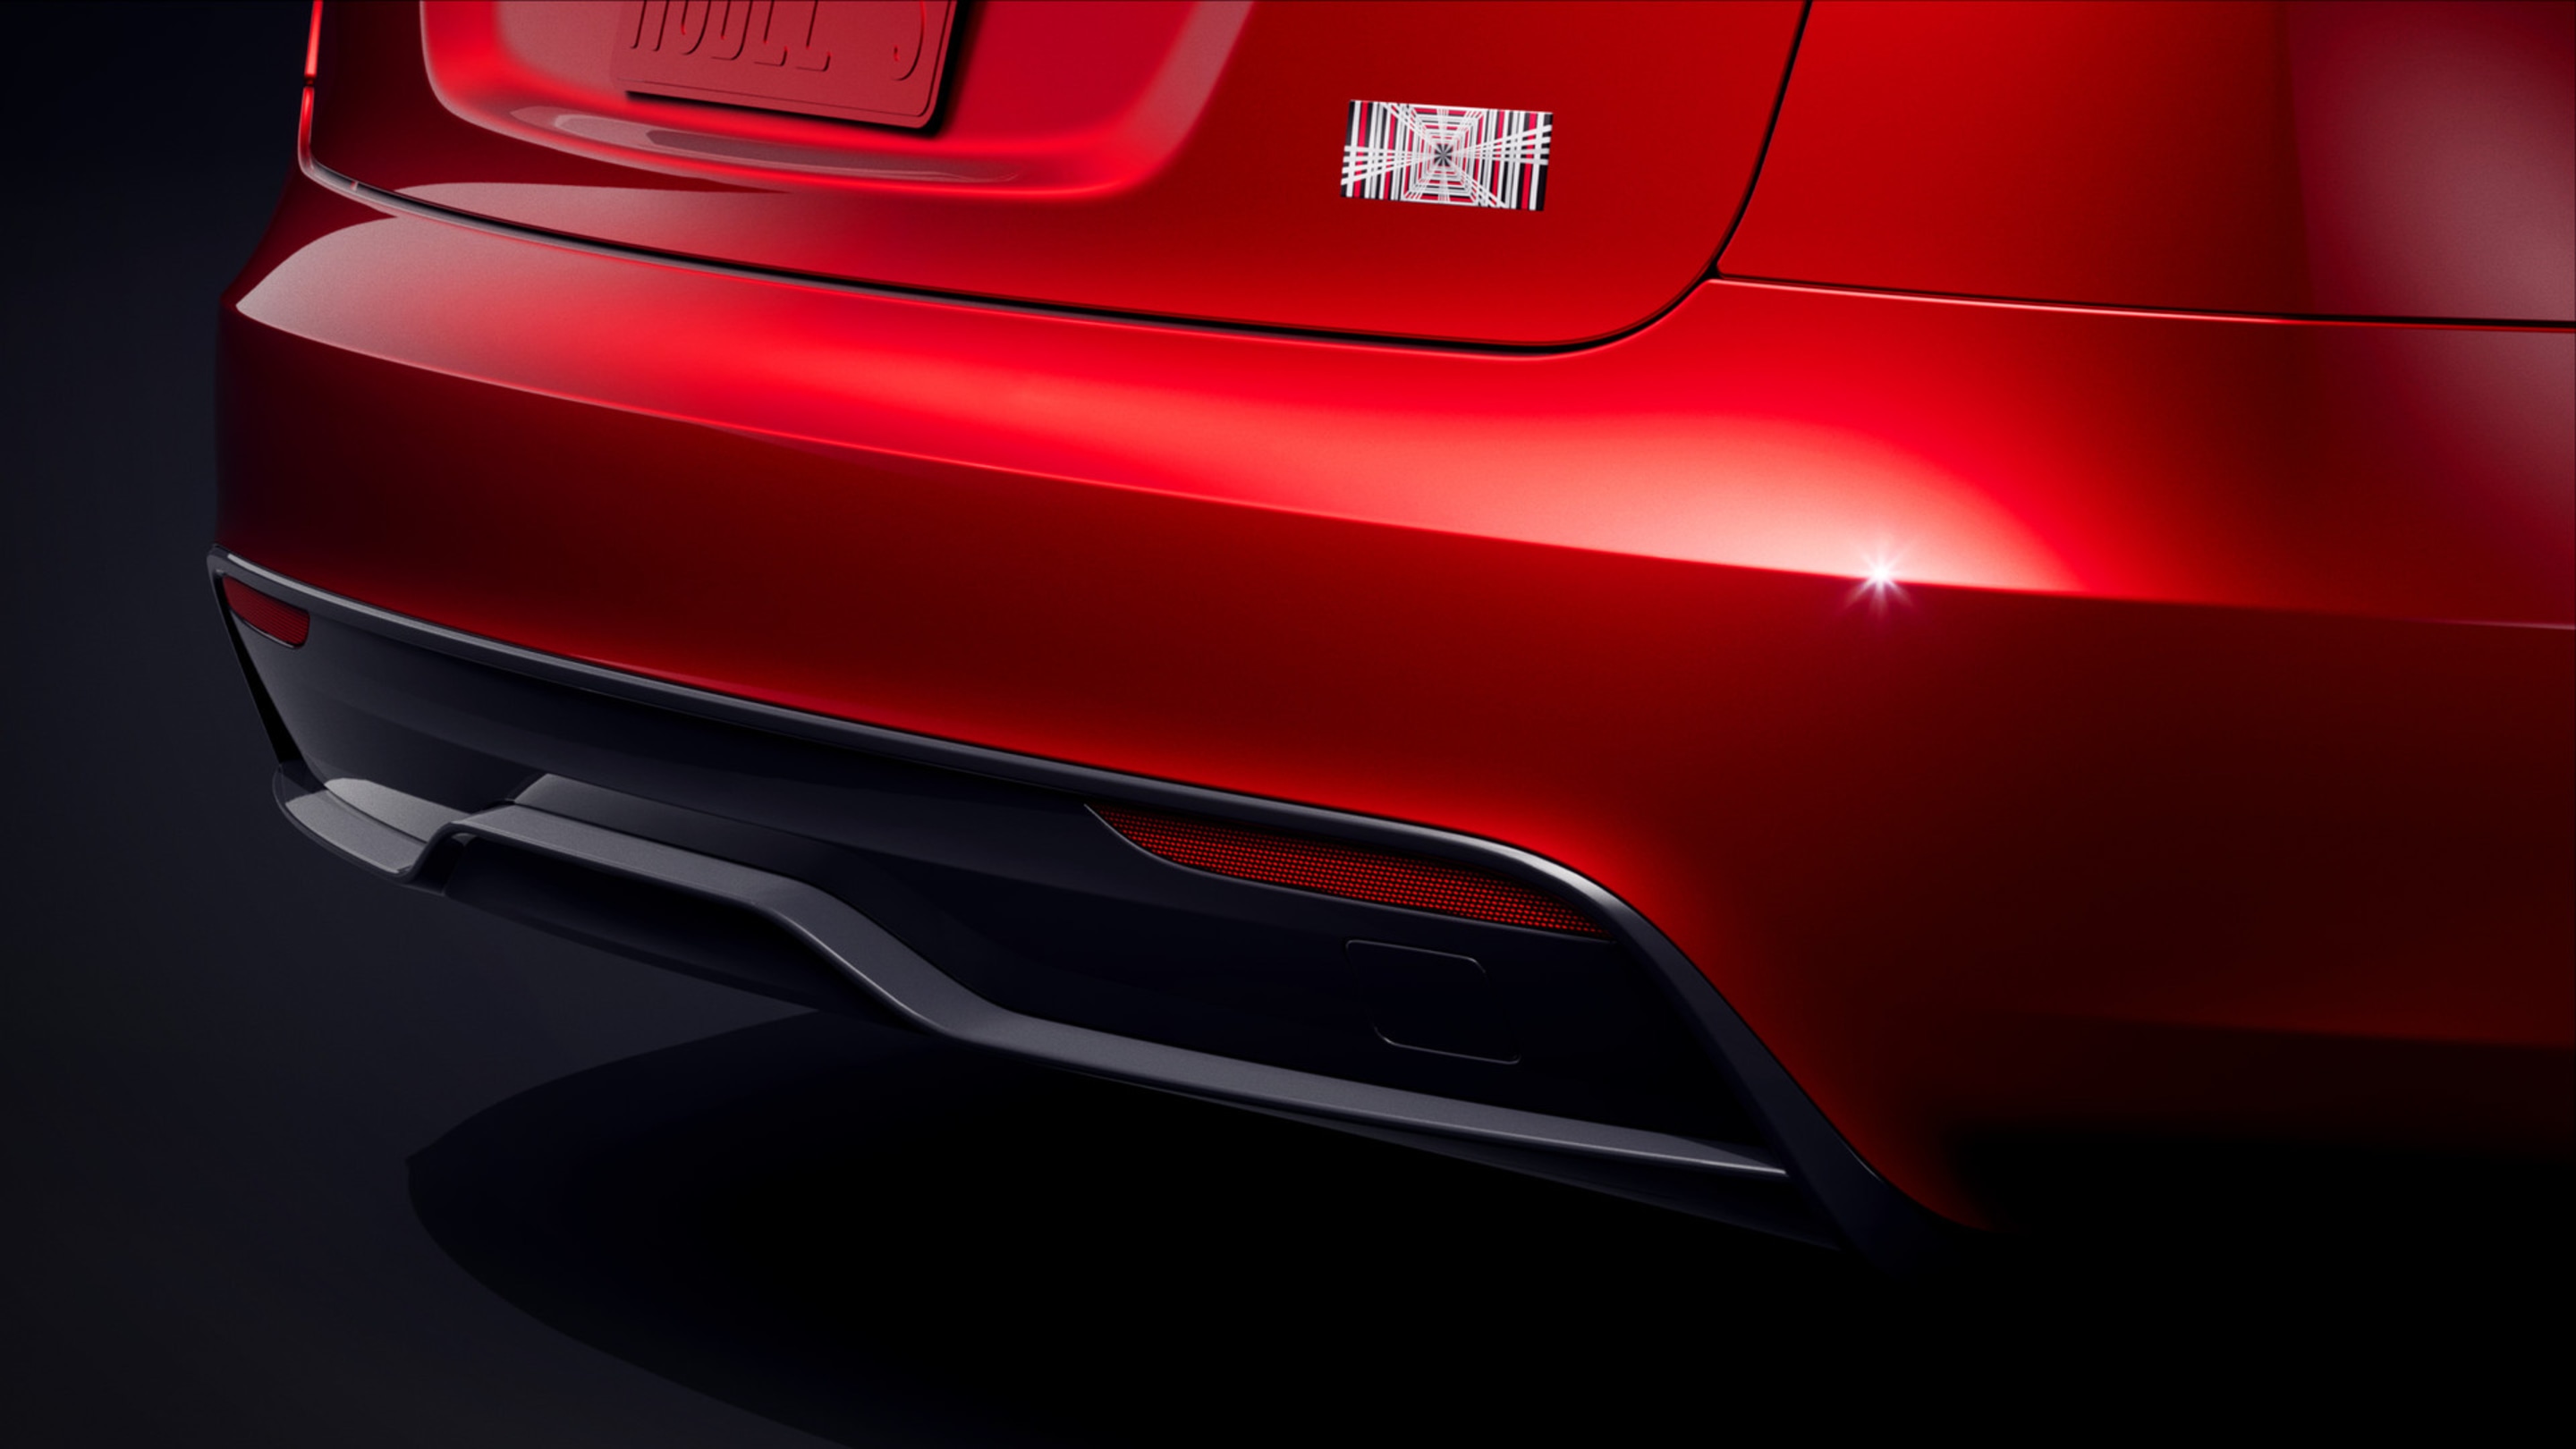 Widok z boku na czerwony pojazd Model S